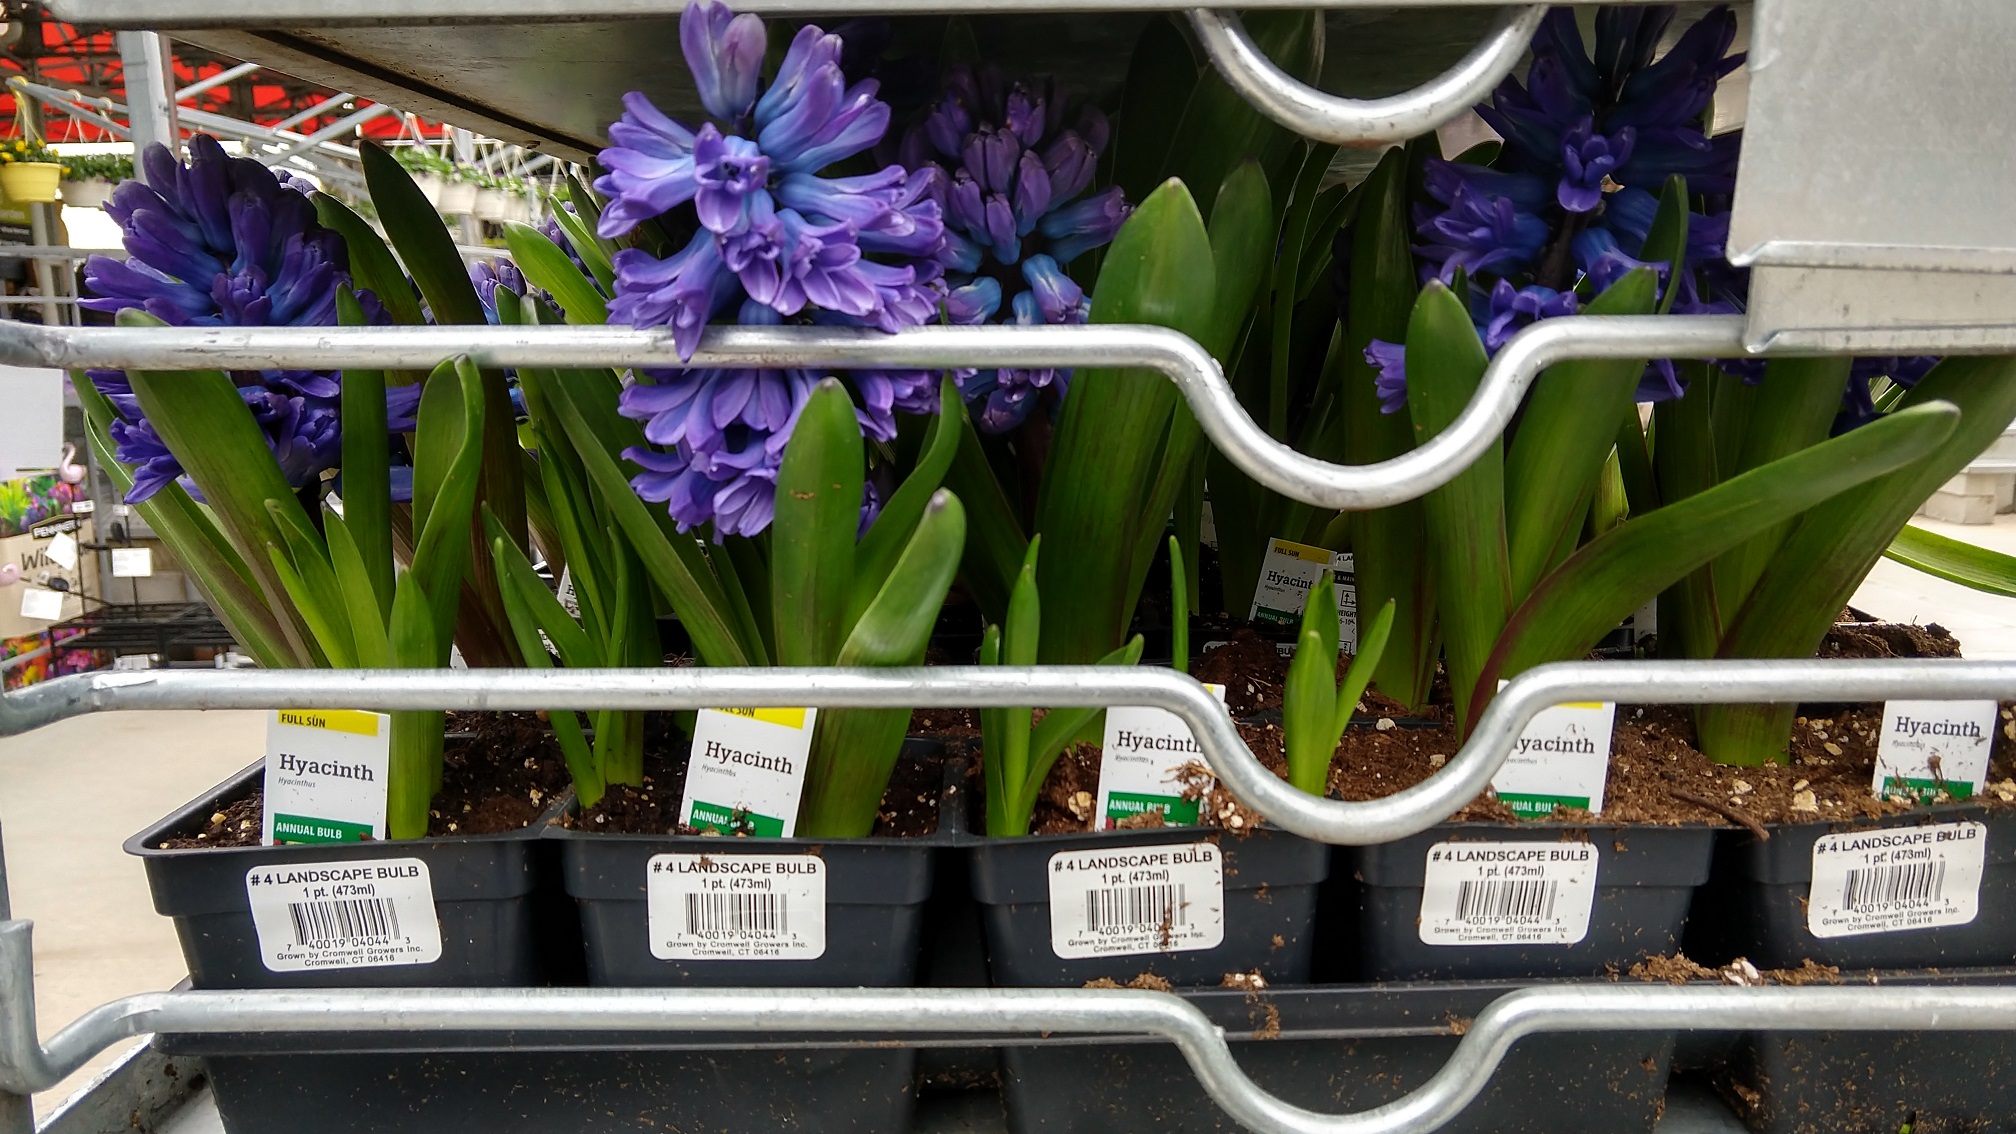 Hyacinth Bulbs